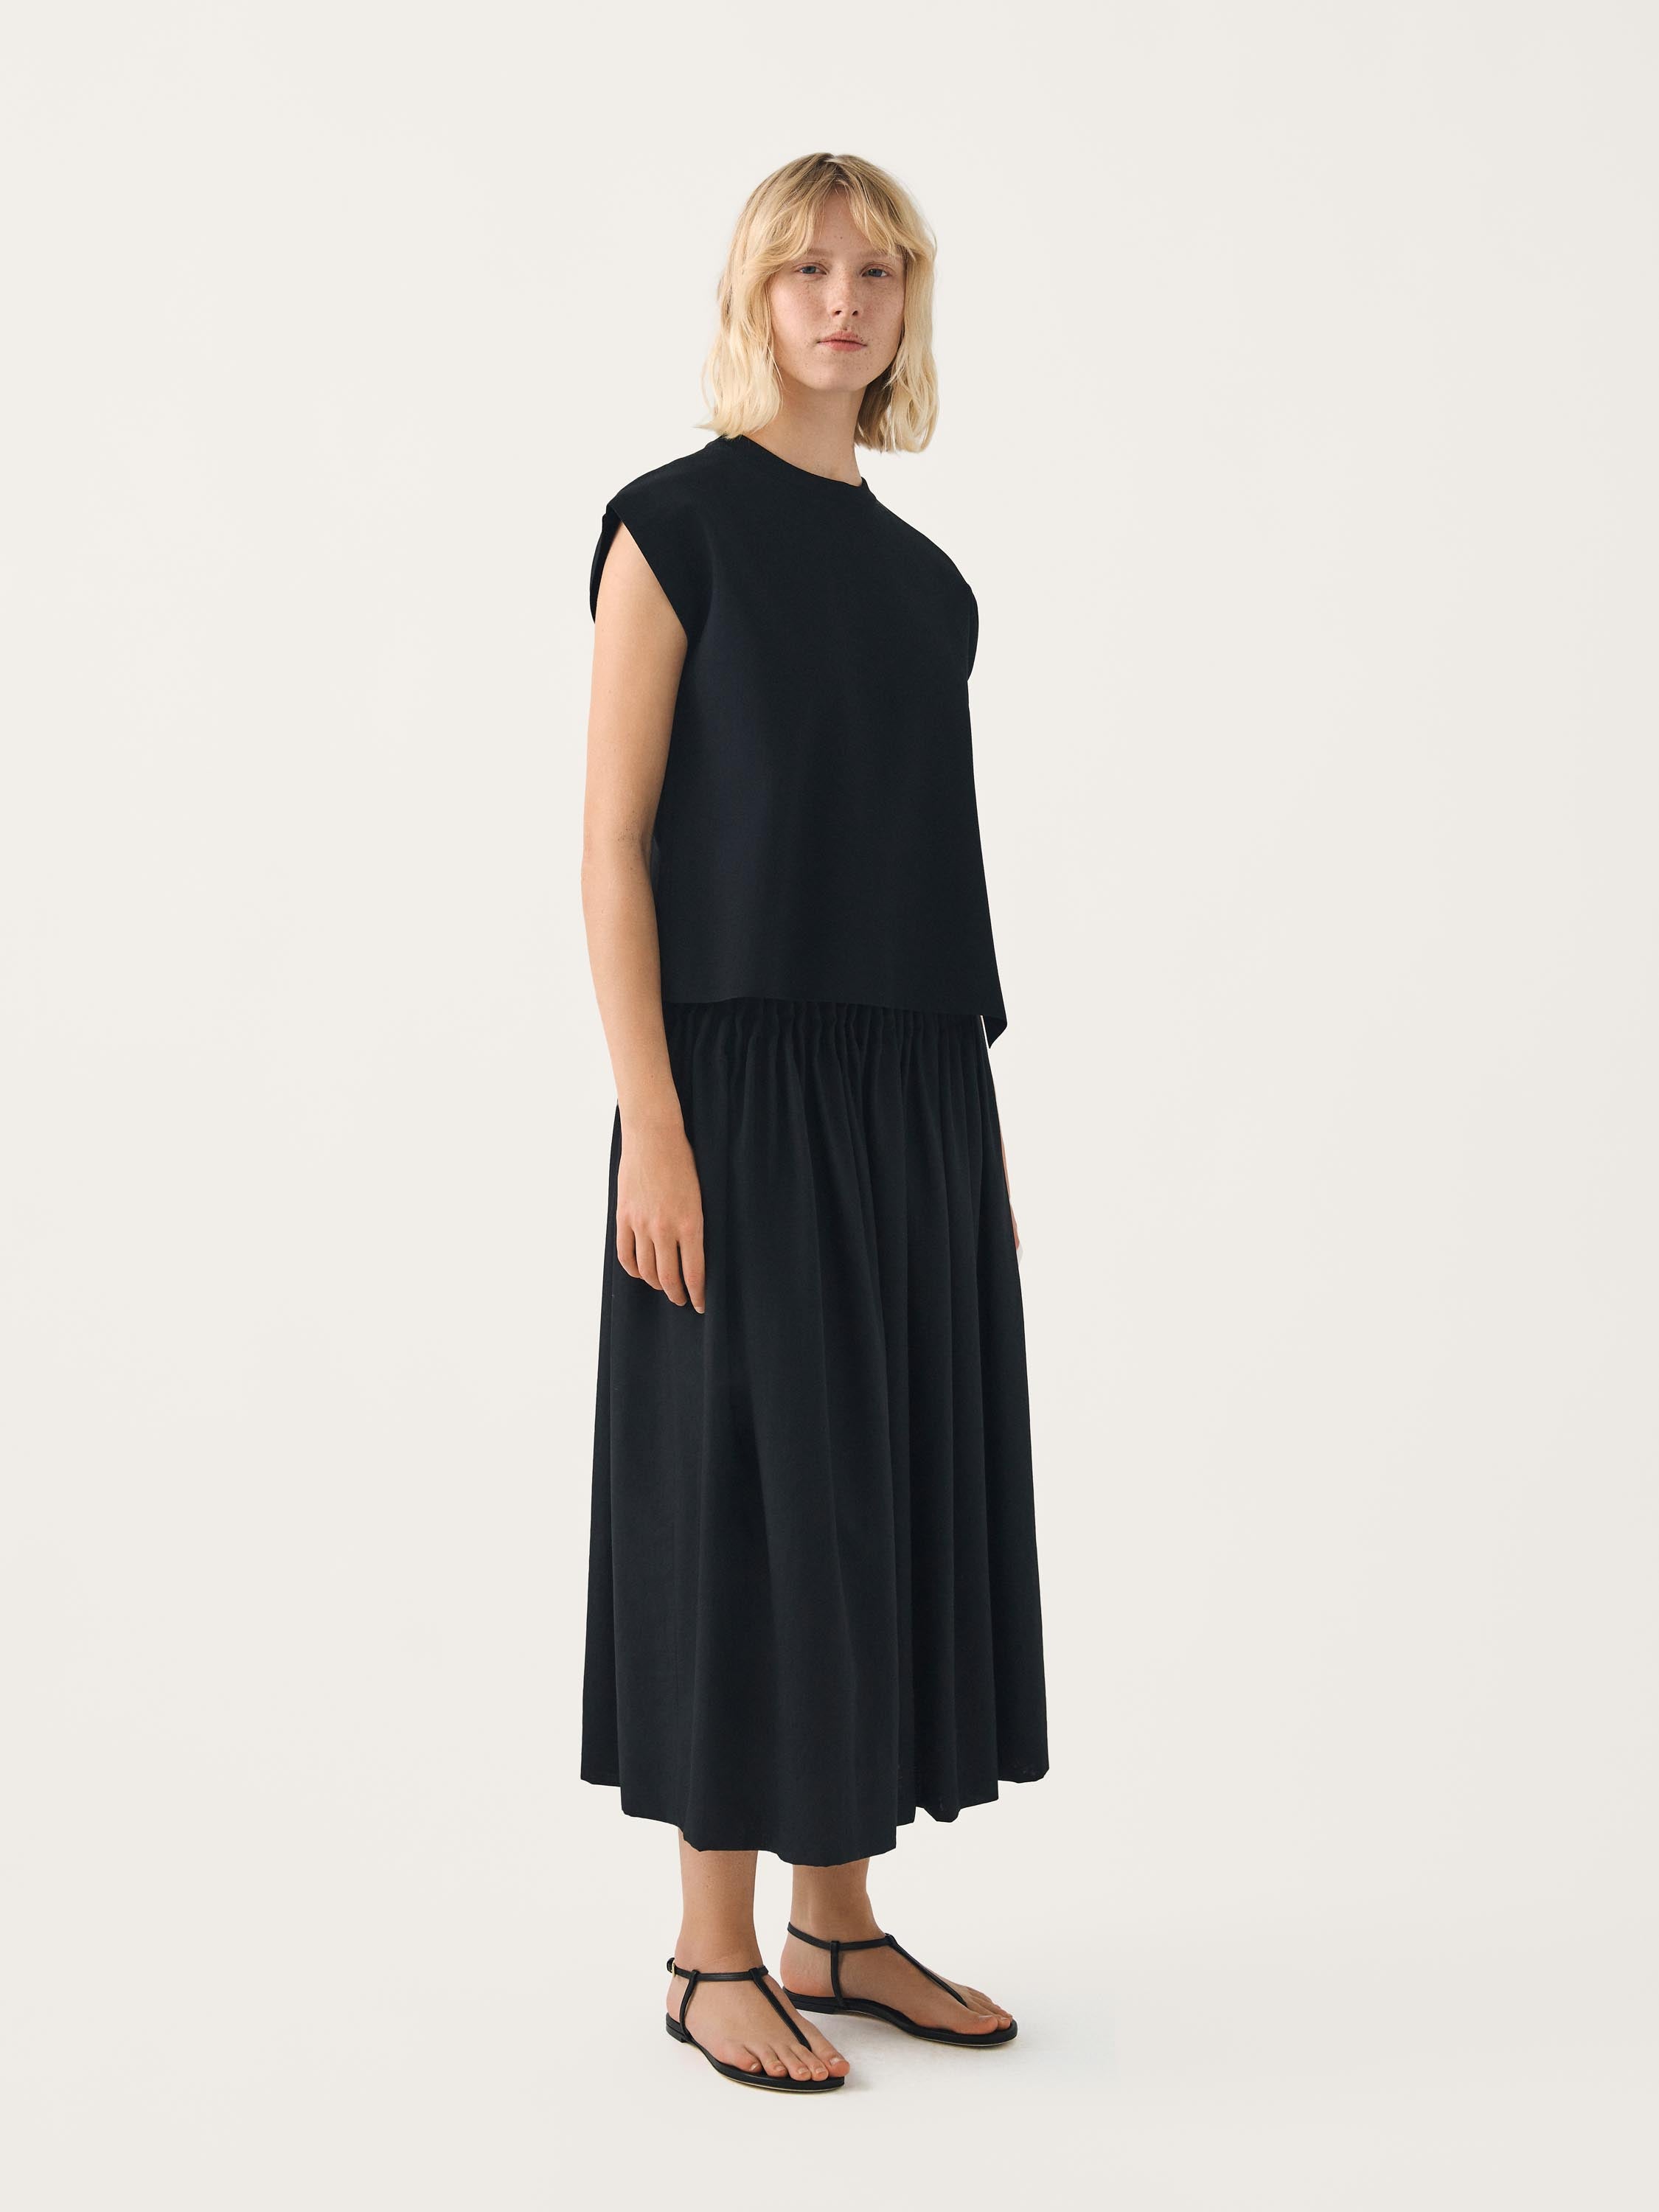 SATHYA mid-length pleated skirt w/ elastic waistband | FFORME